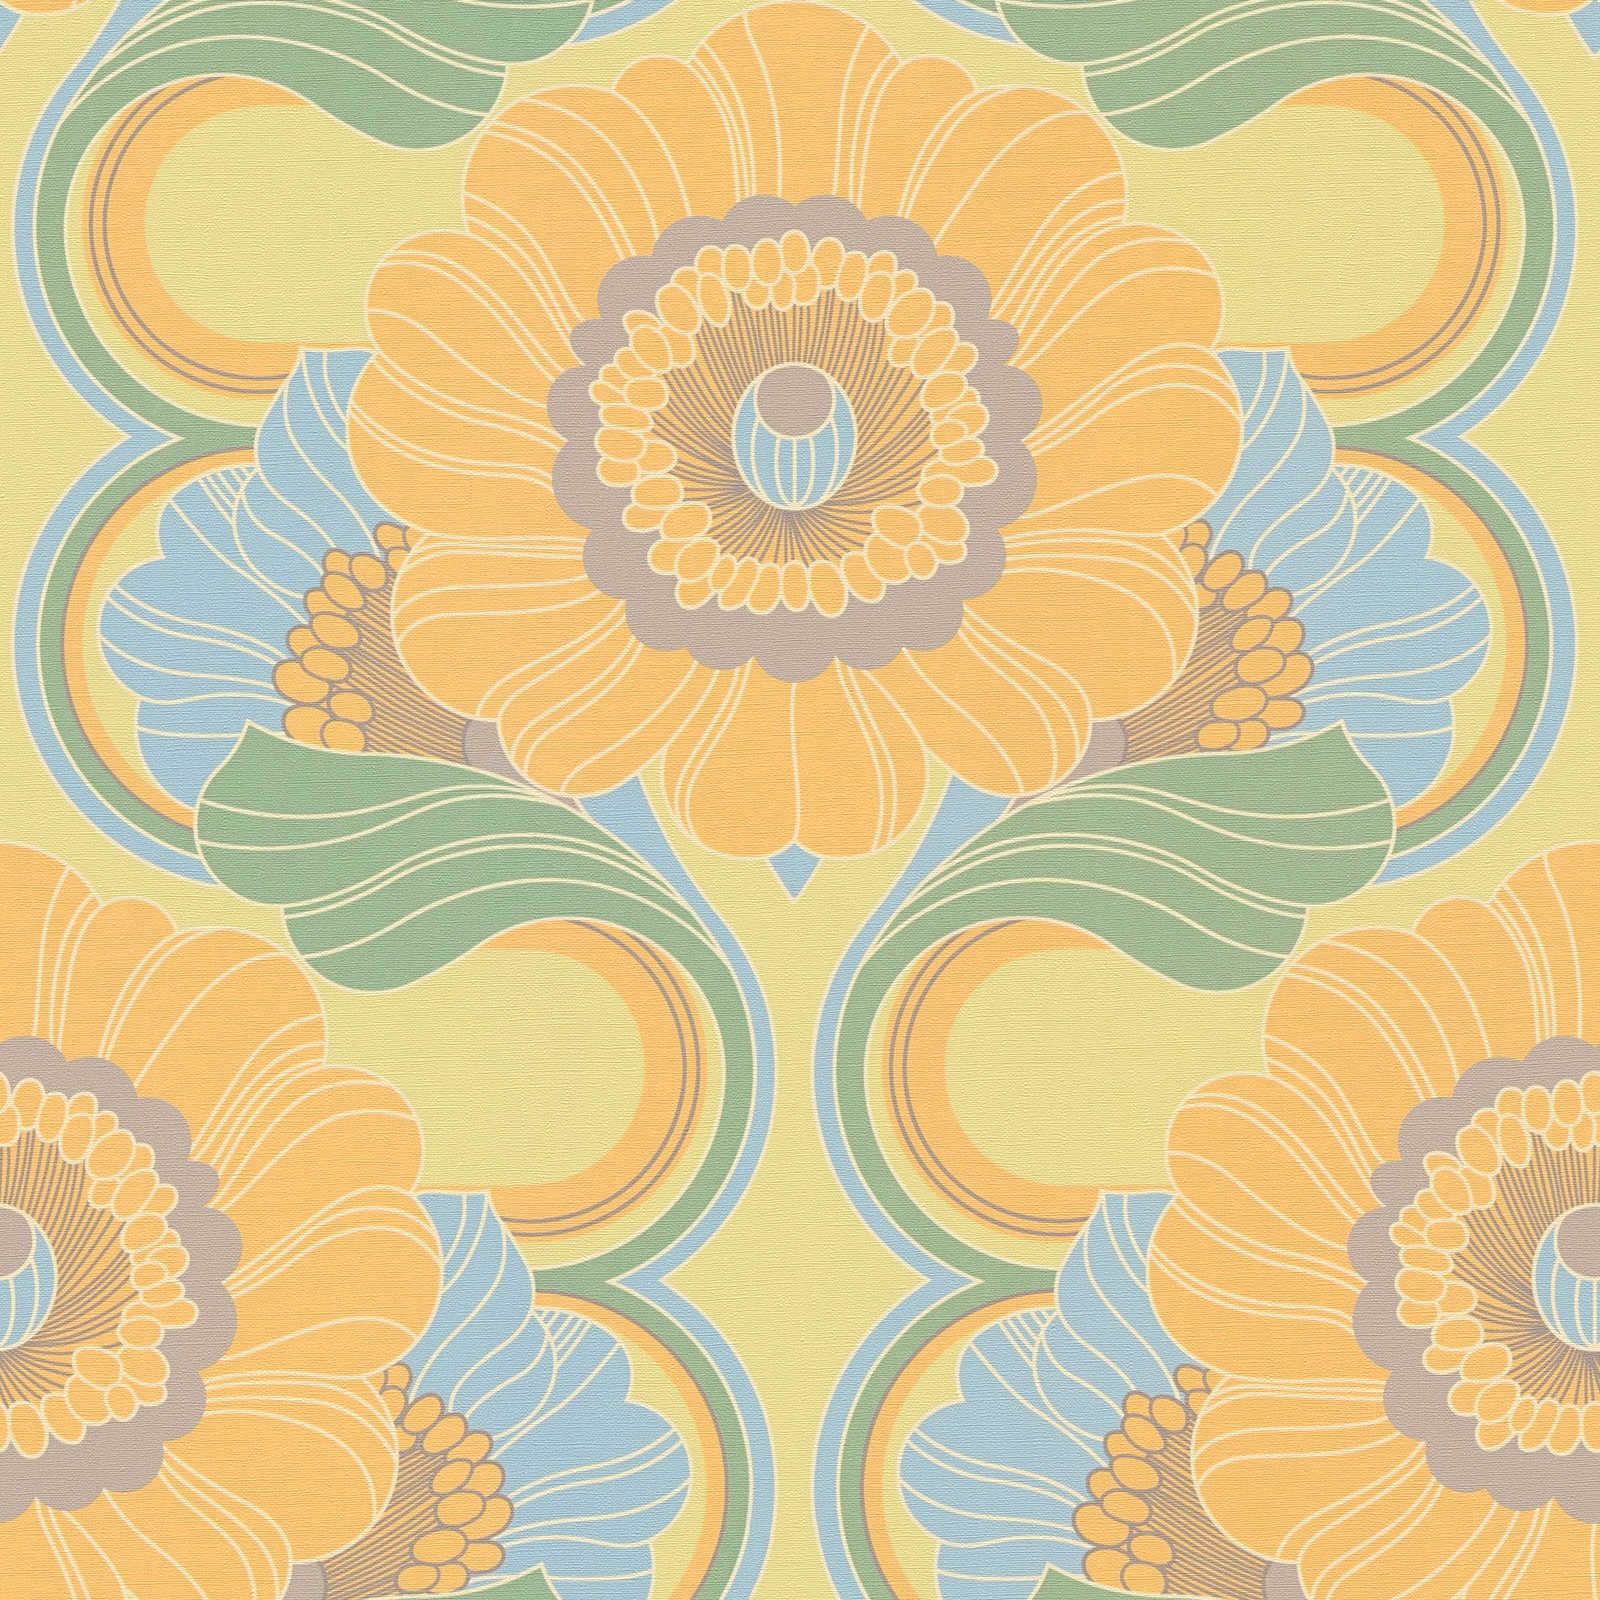             Retrobehang met lichte structuur en bloemenpatroon - blauw, geel, groen
        